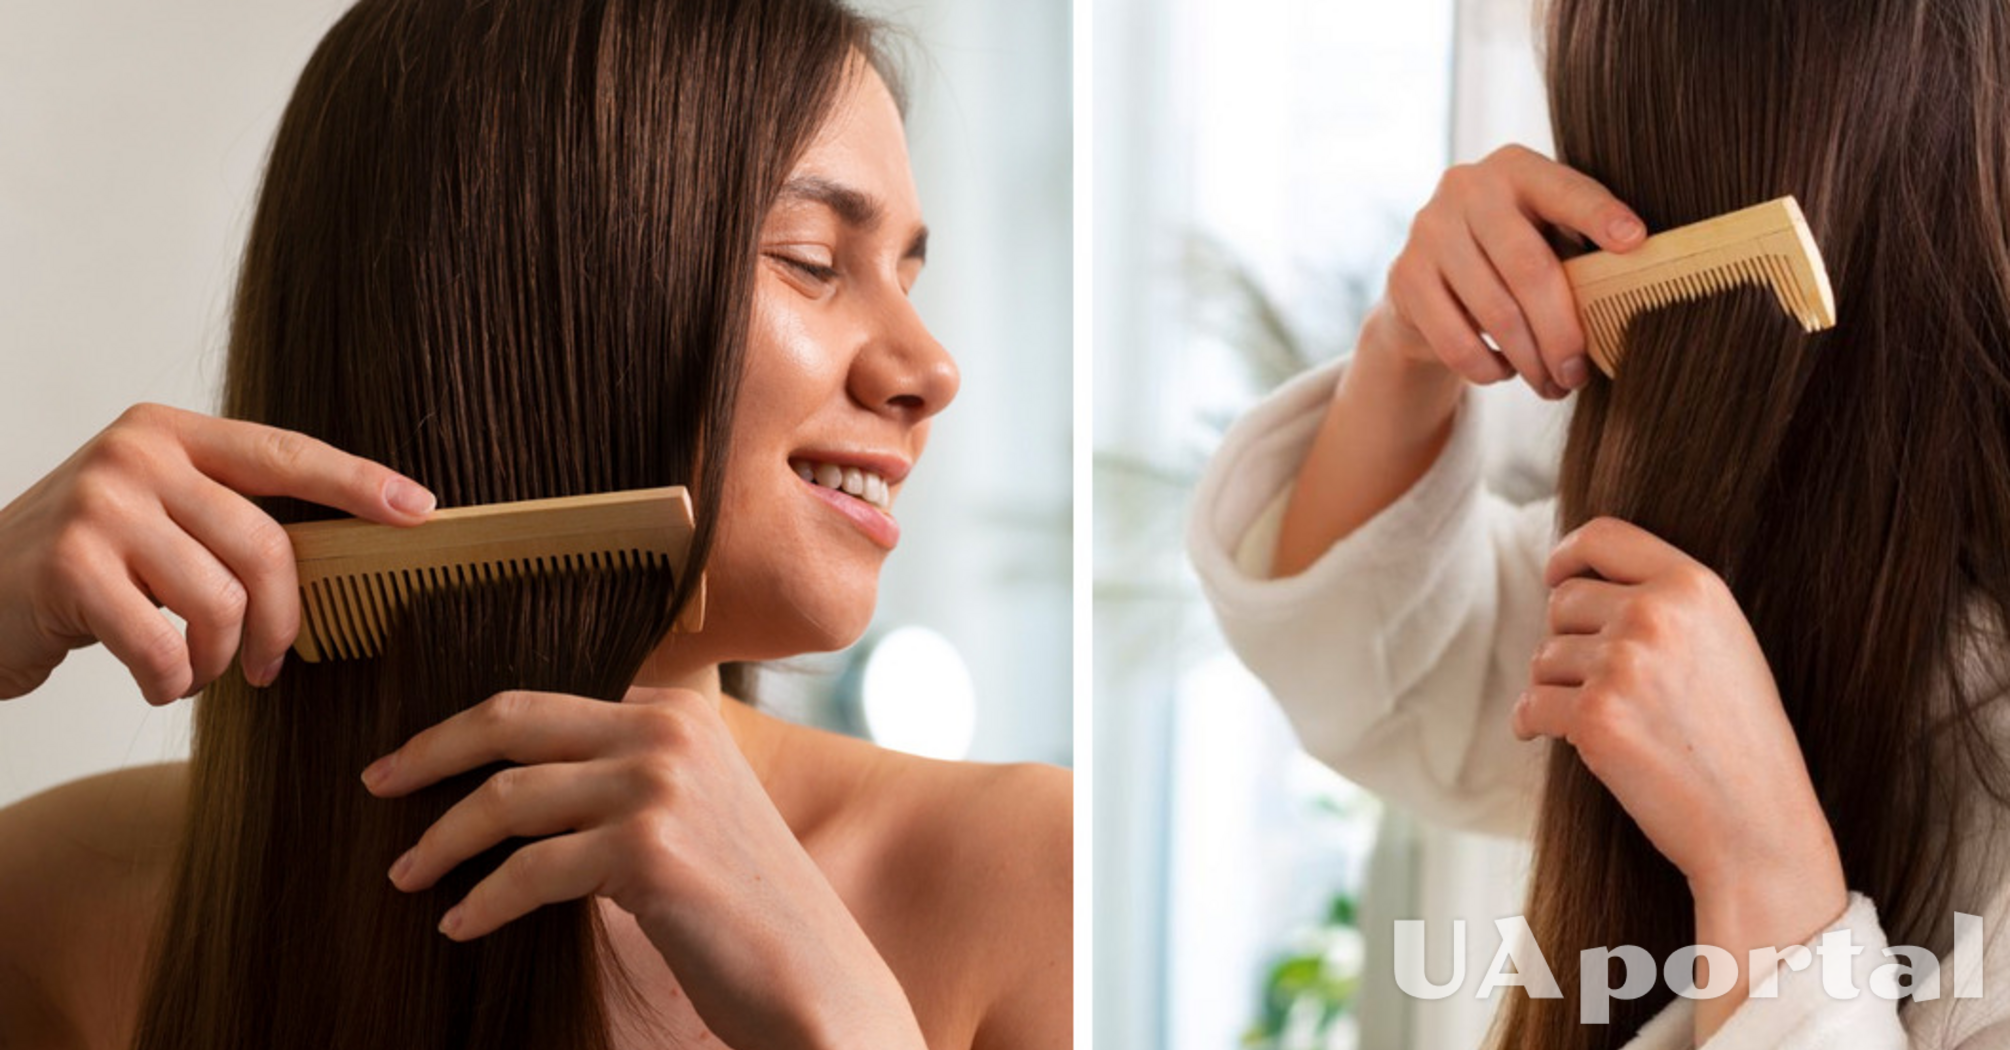 От этого зависит здоровье ваших волос: как правильно чистить расческу.